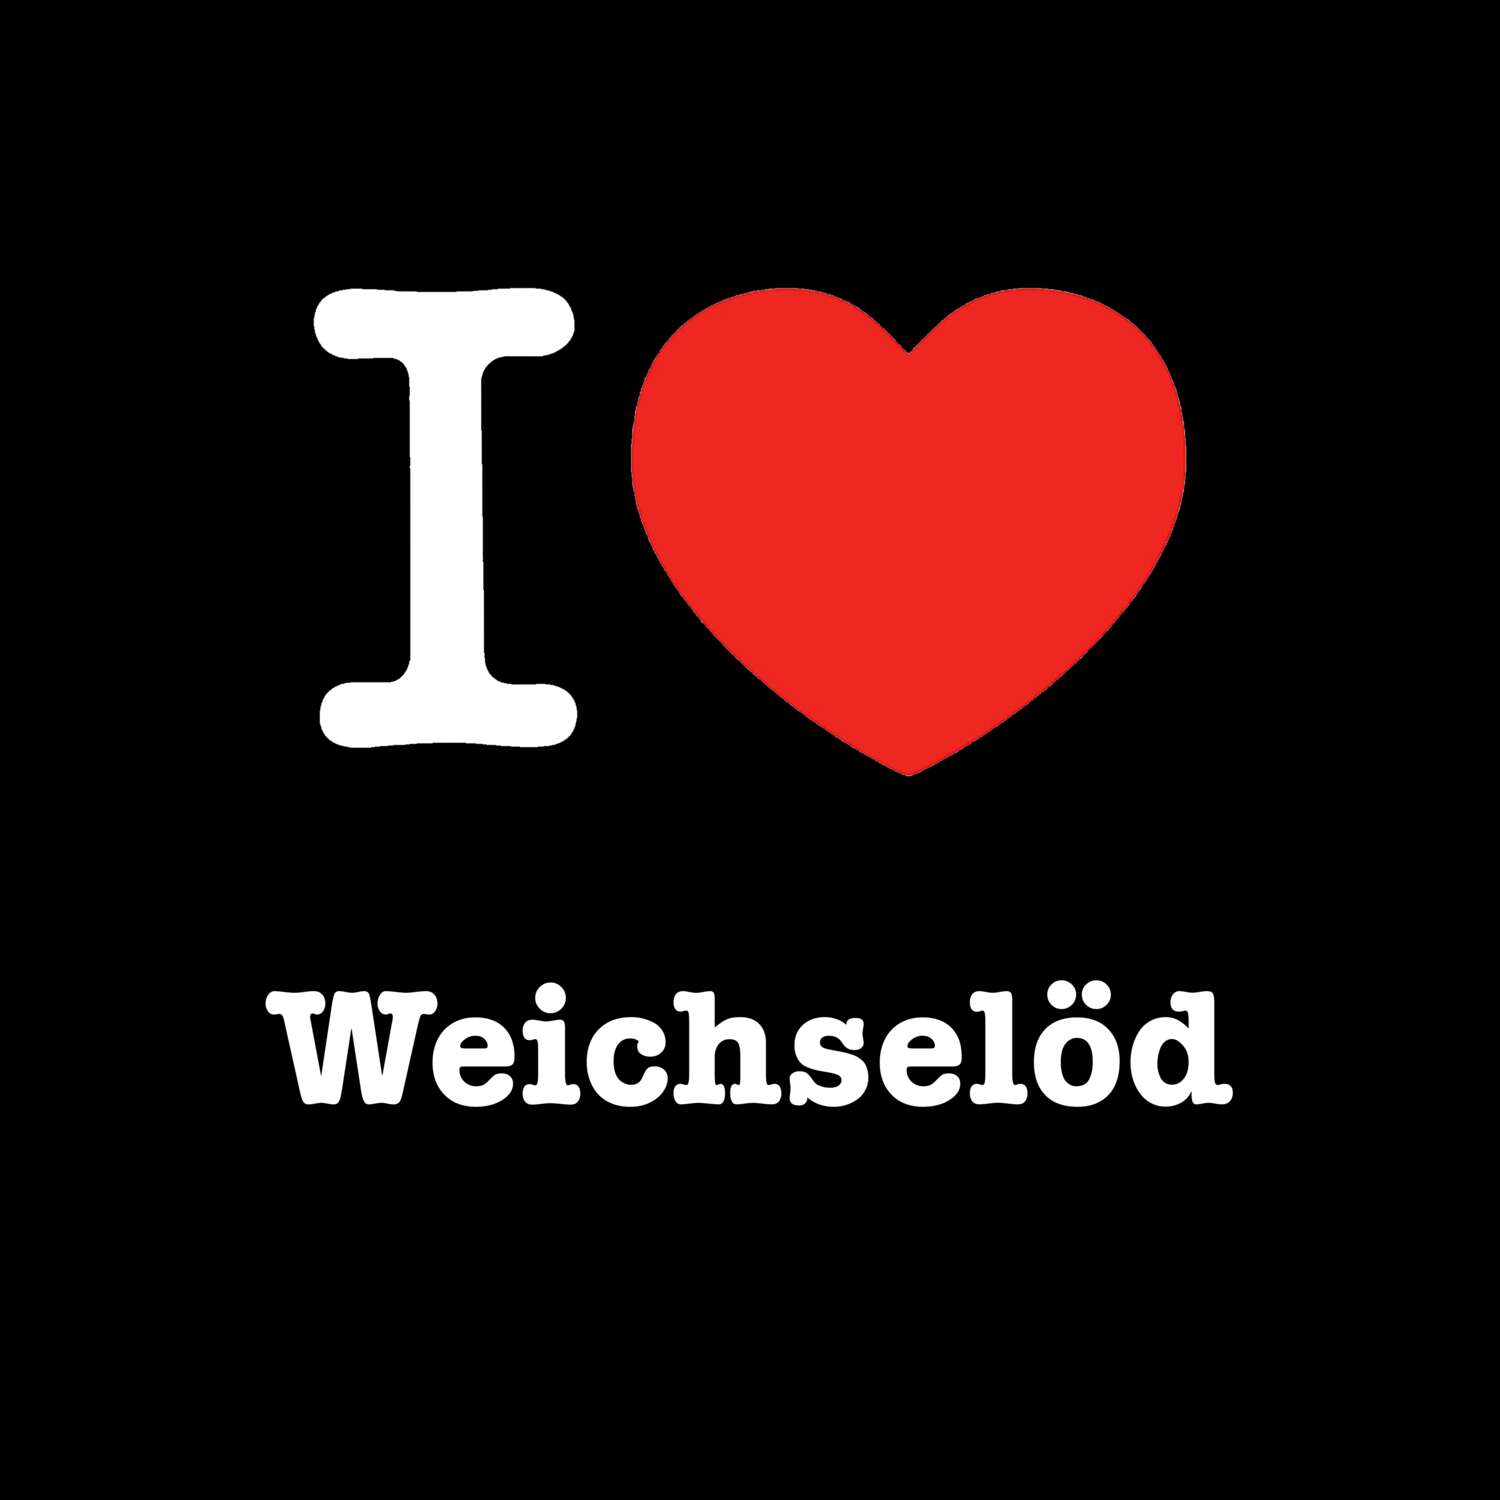 Weichselöd T-Shirt »I love«